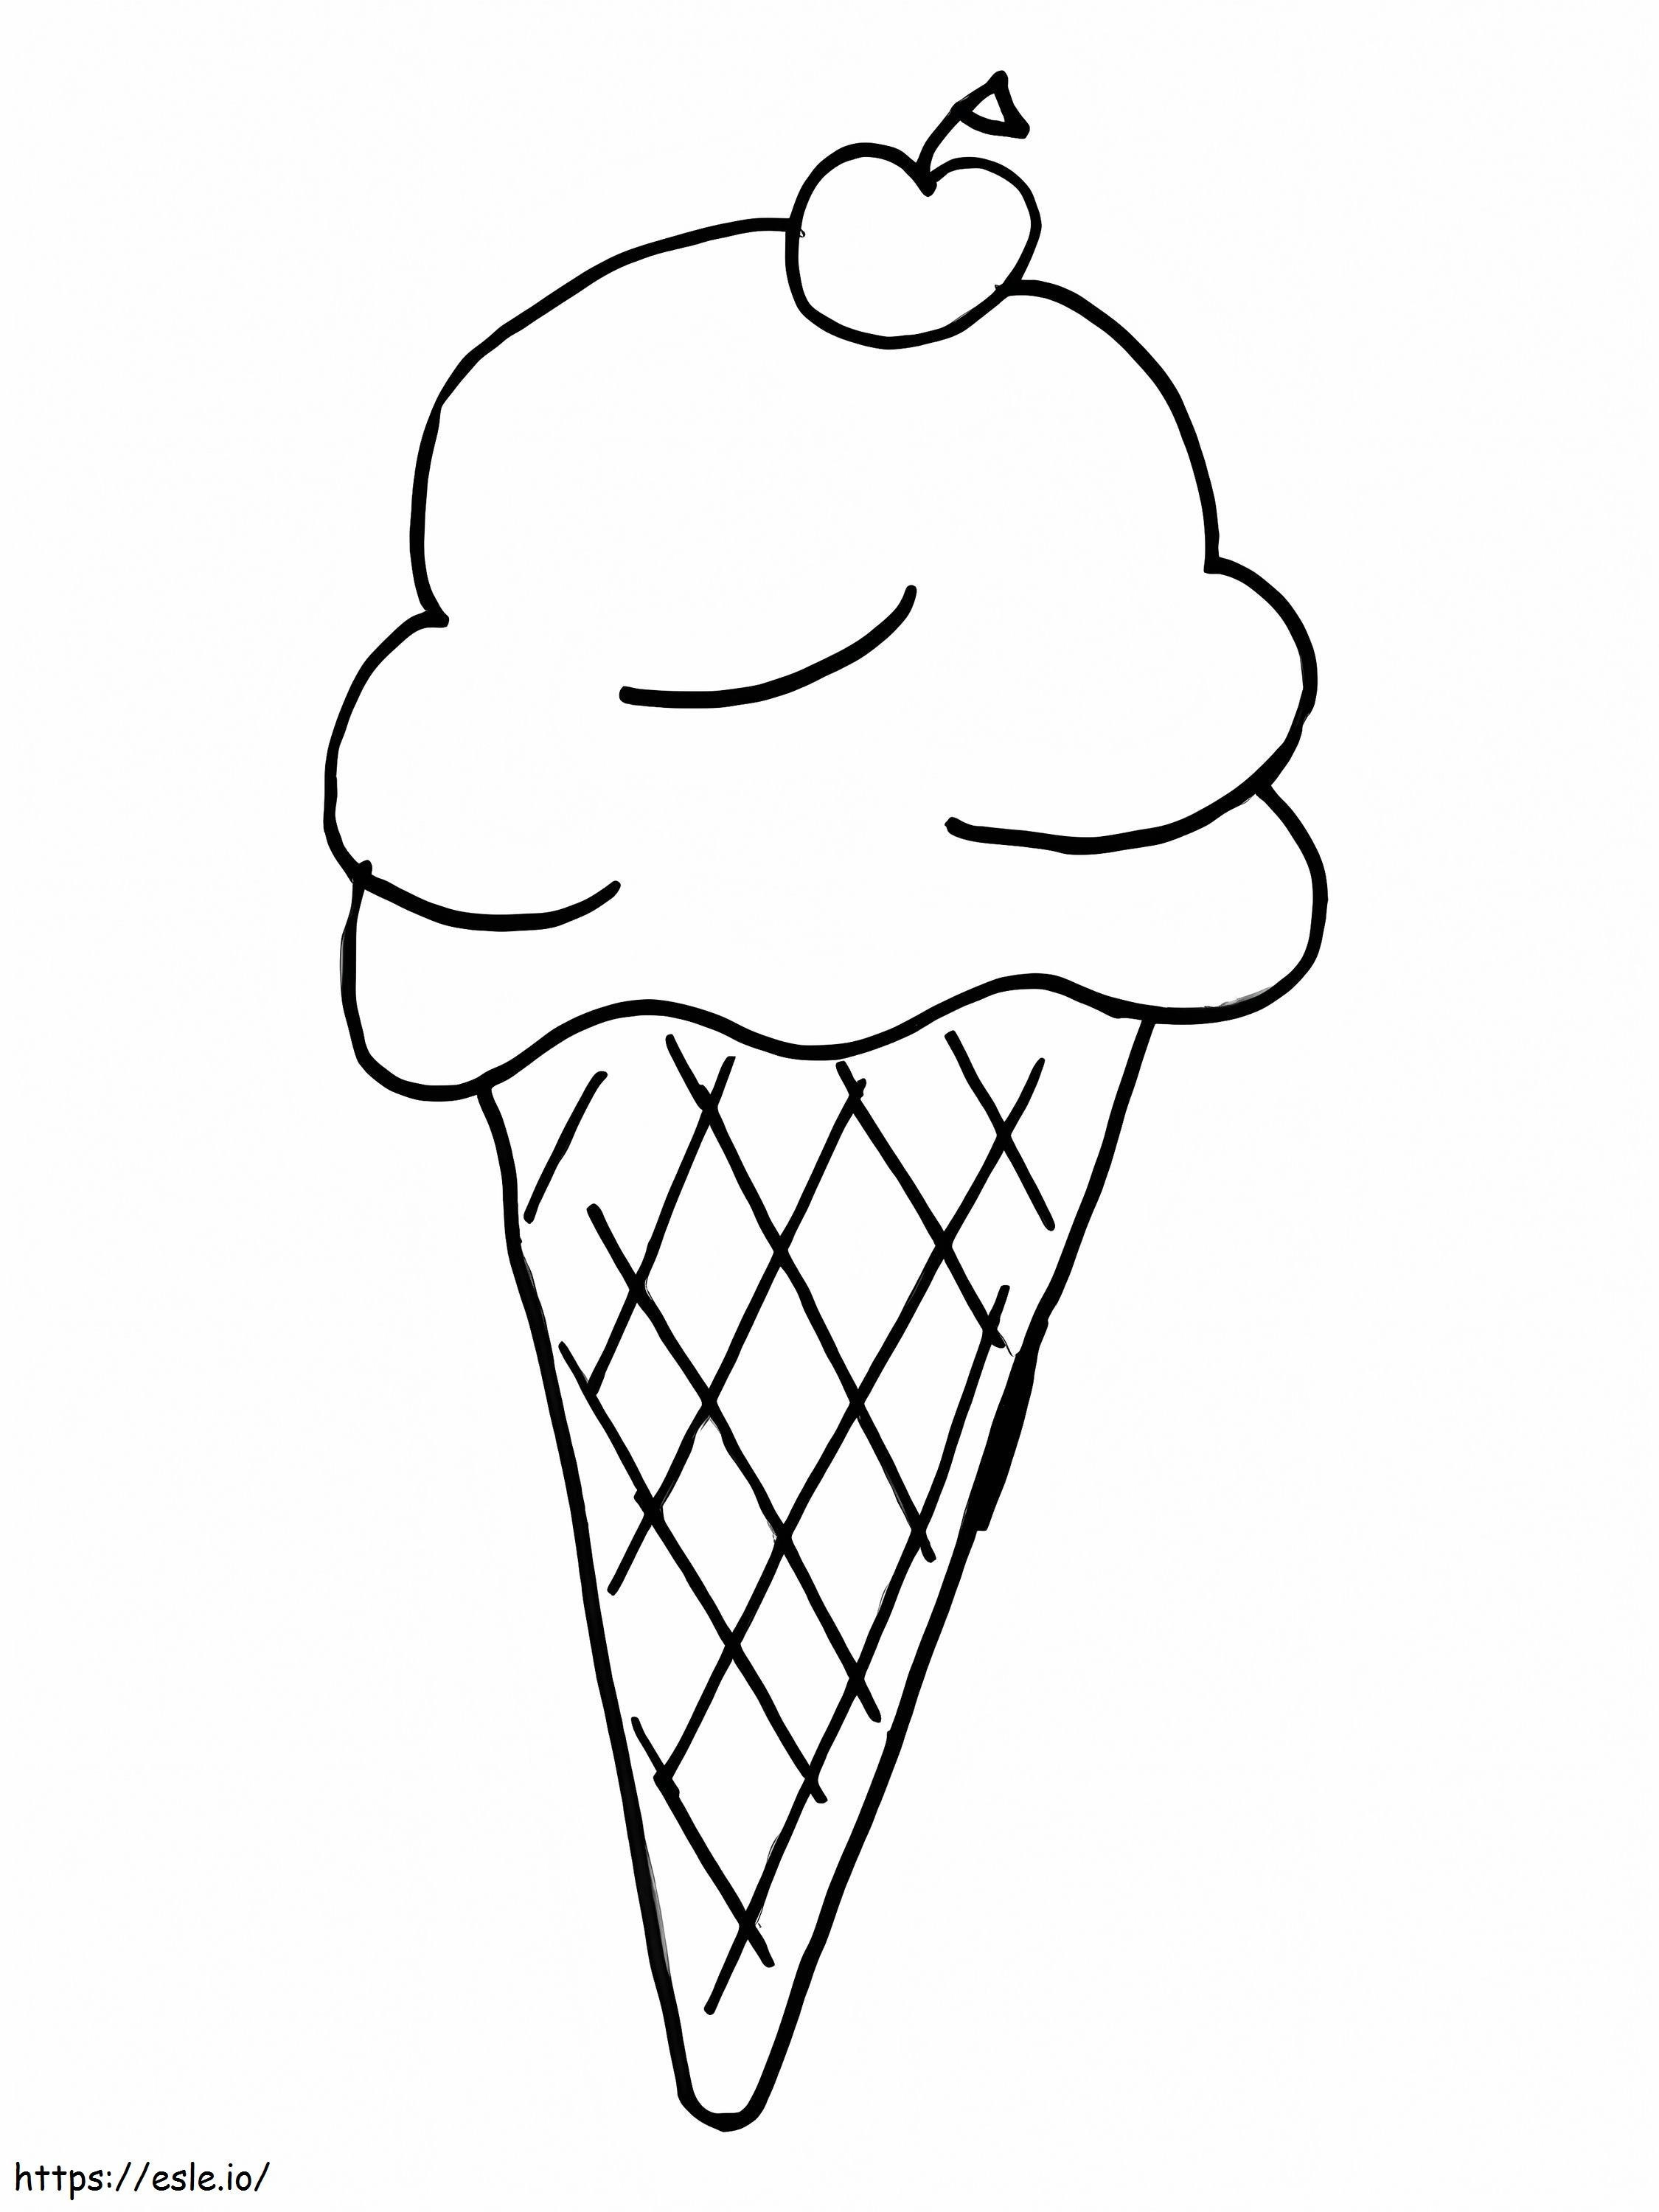 Înghețată normală de colorat